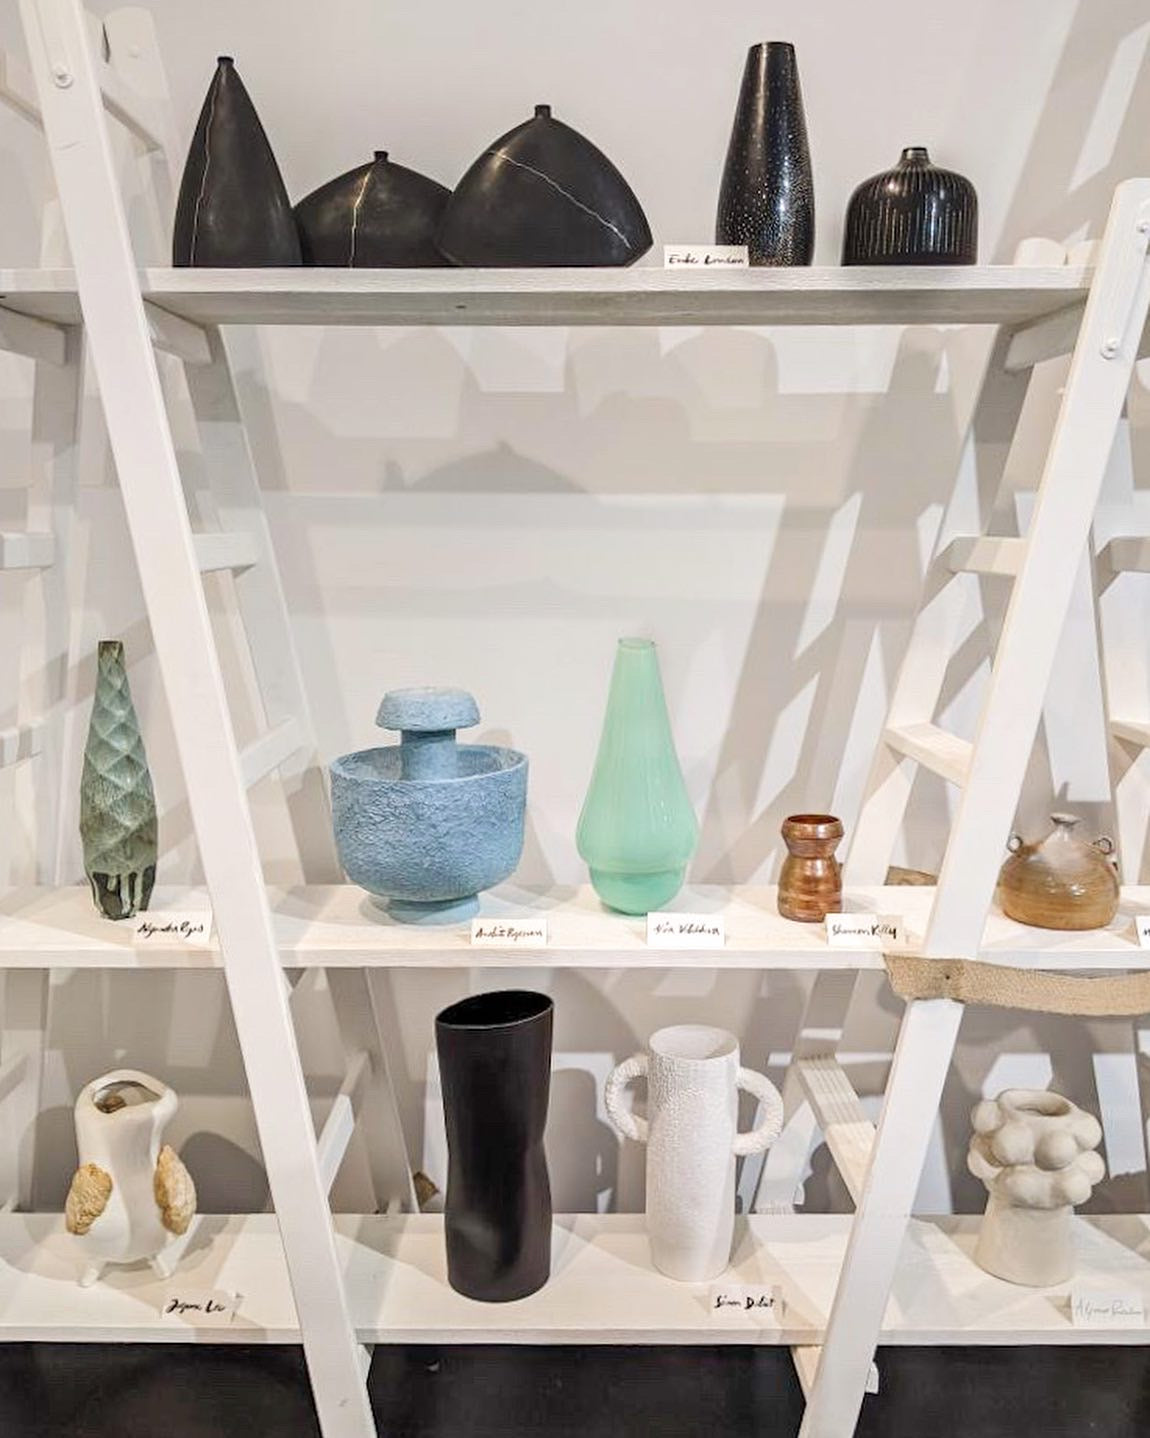 Group Exhibit: 1000 Vases, Paris